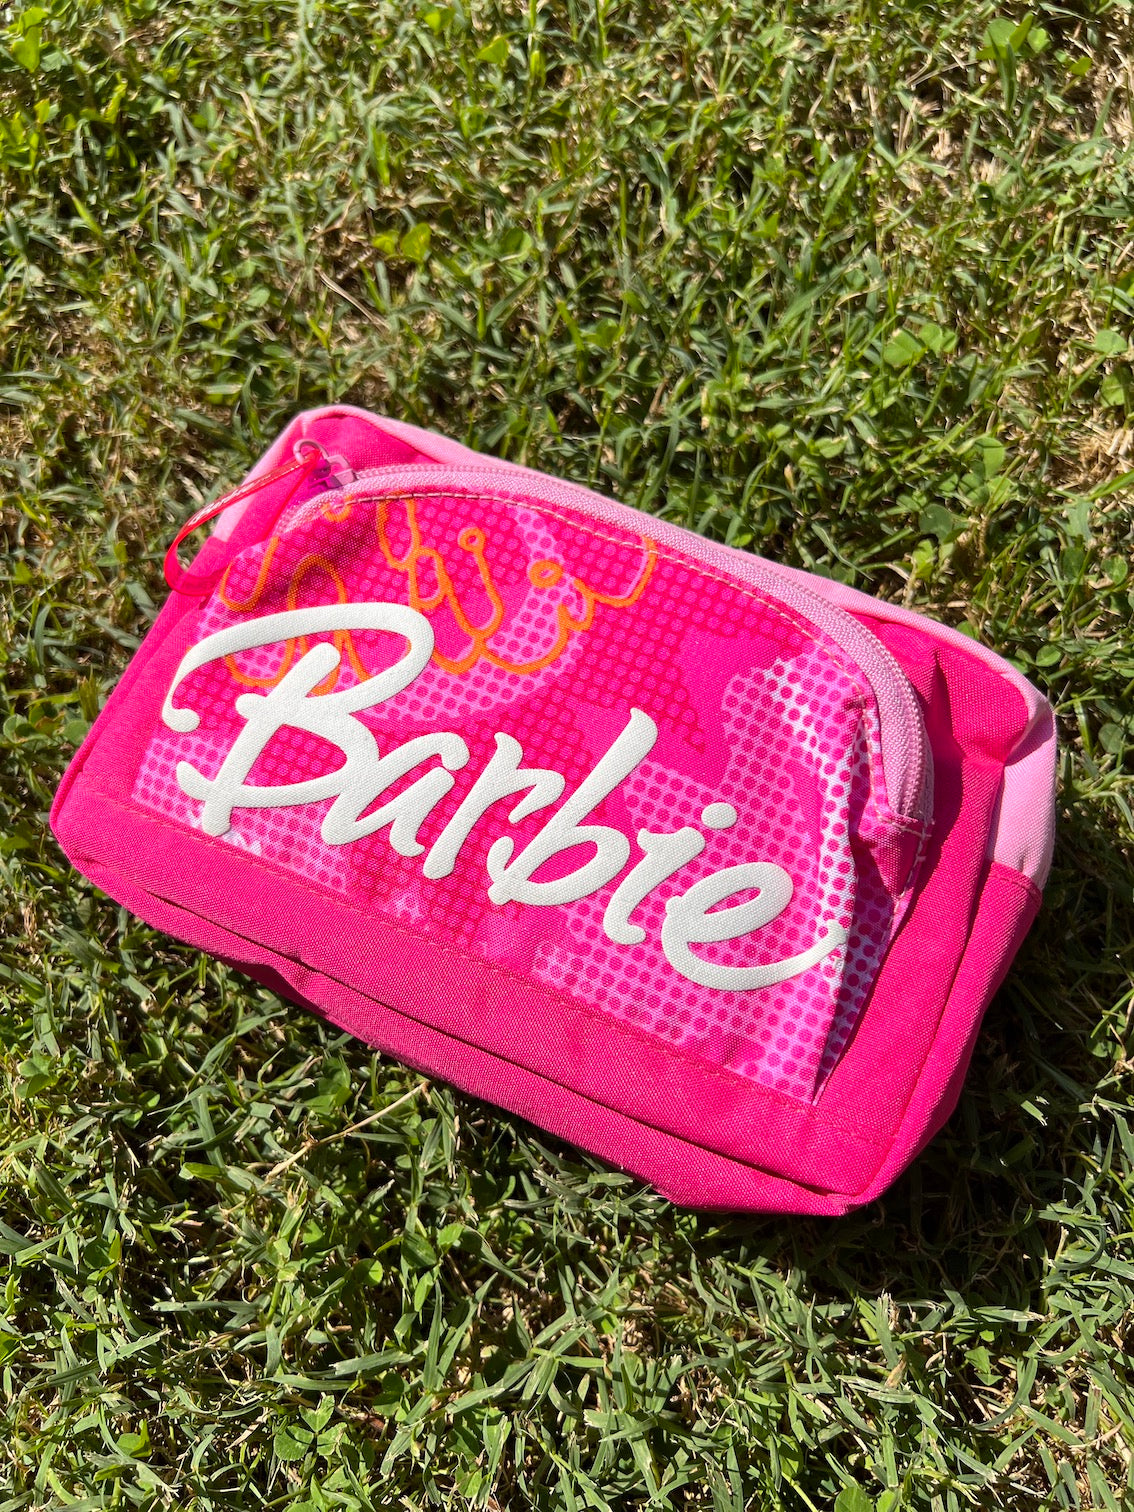 Pochette / trousse rose vintage Barbie